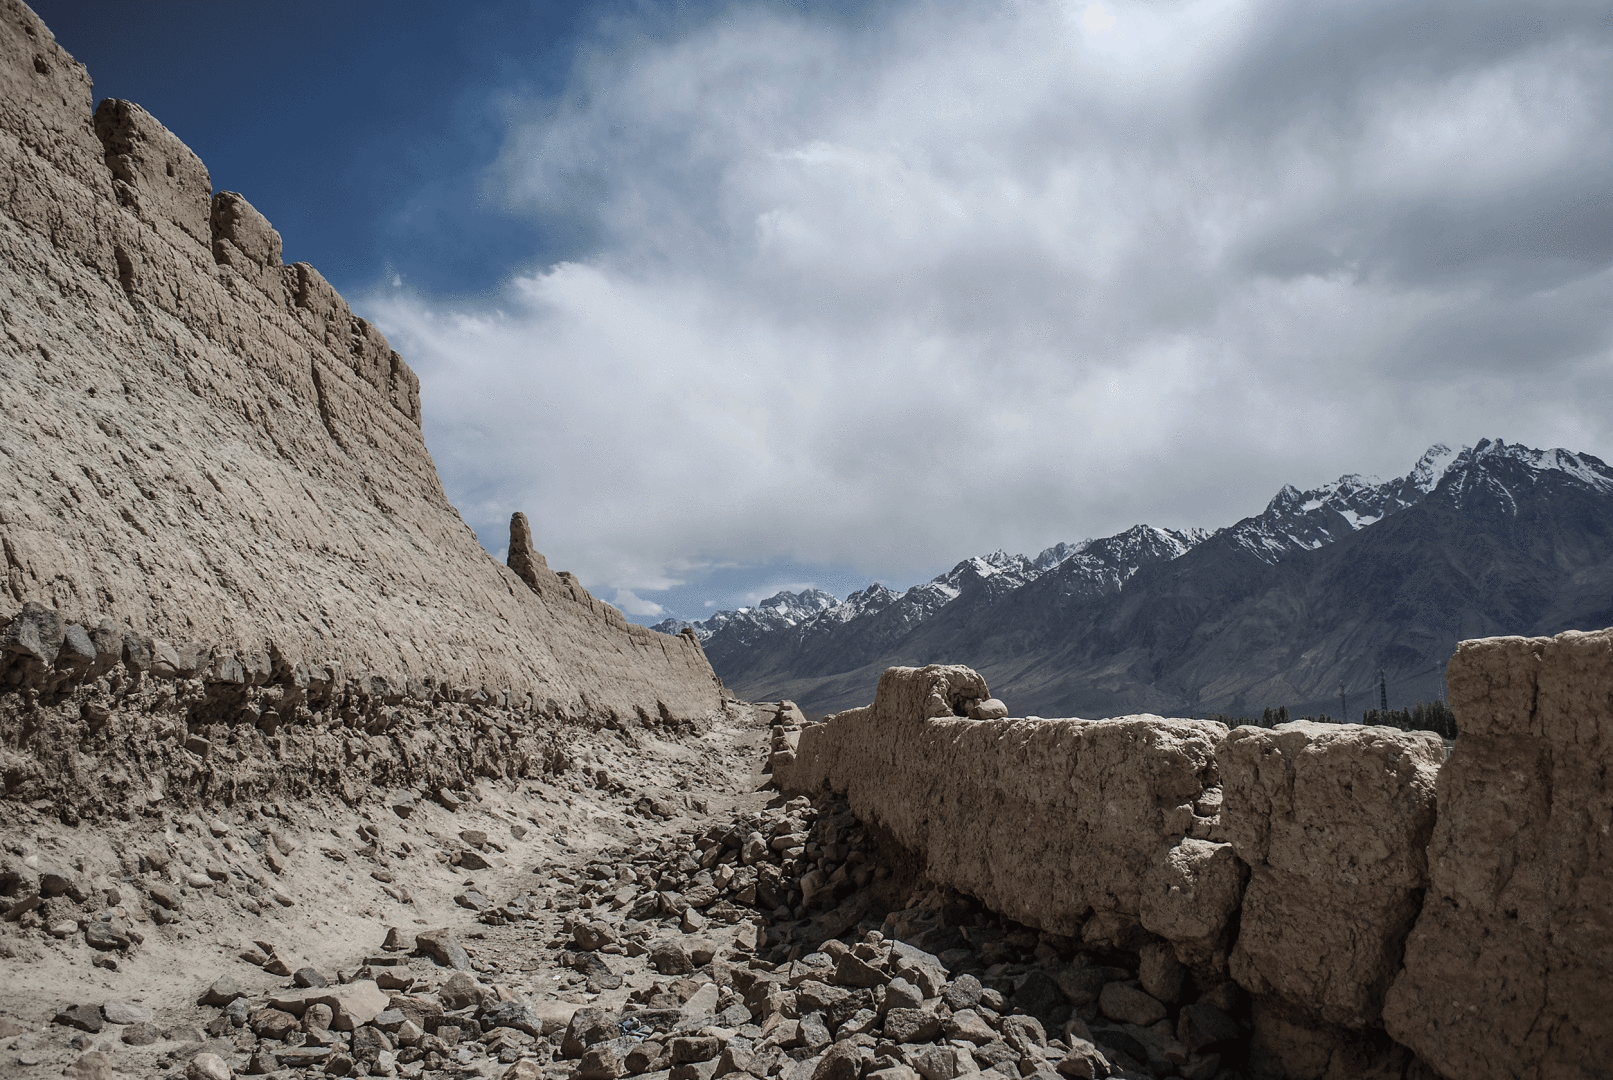 fortress-tashkurgan-xinjiang-karakoram highway